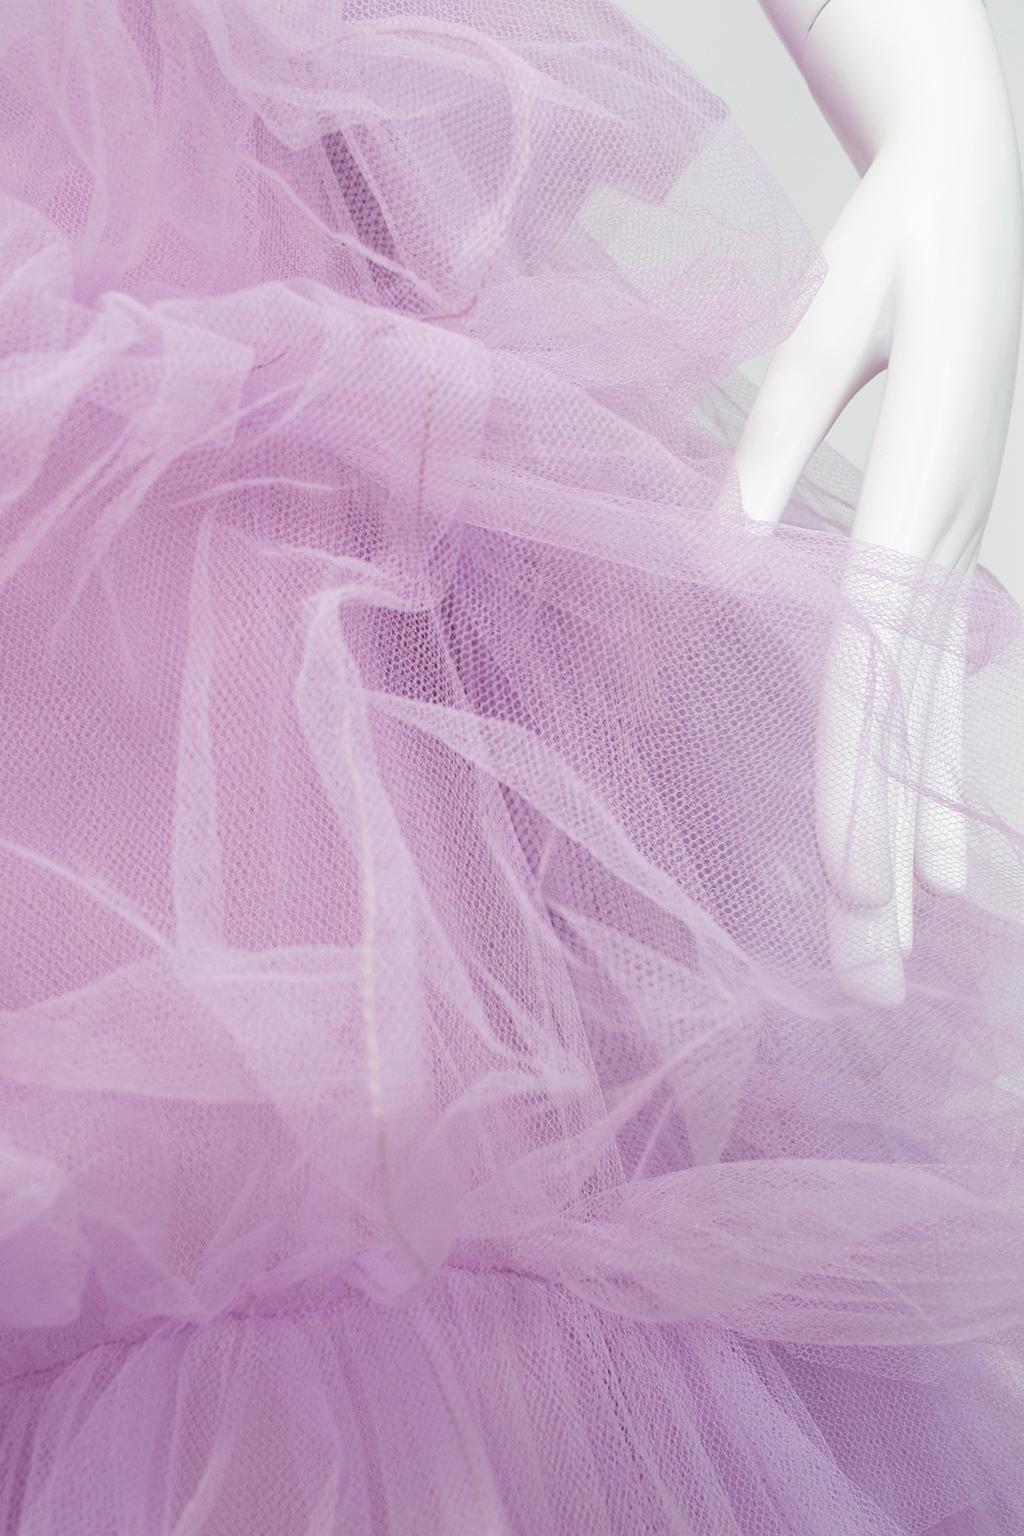 Voluminous Strapless Lavender Tulle Balloon-Ruffle Ballerina Ball Gown– S, 1950s 2